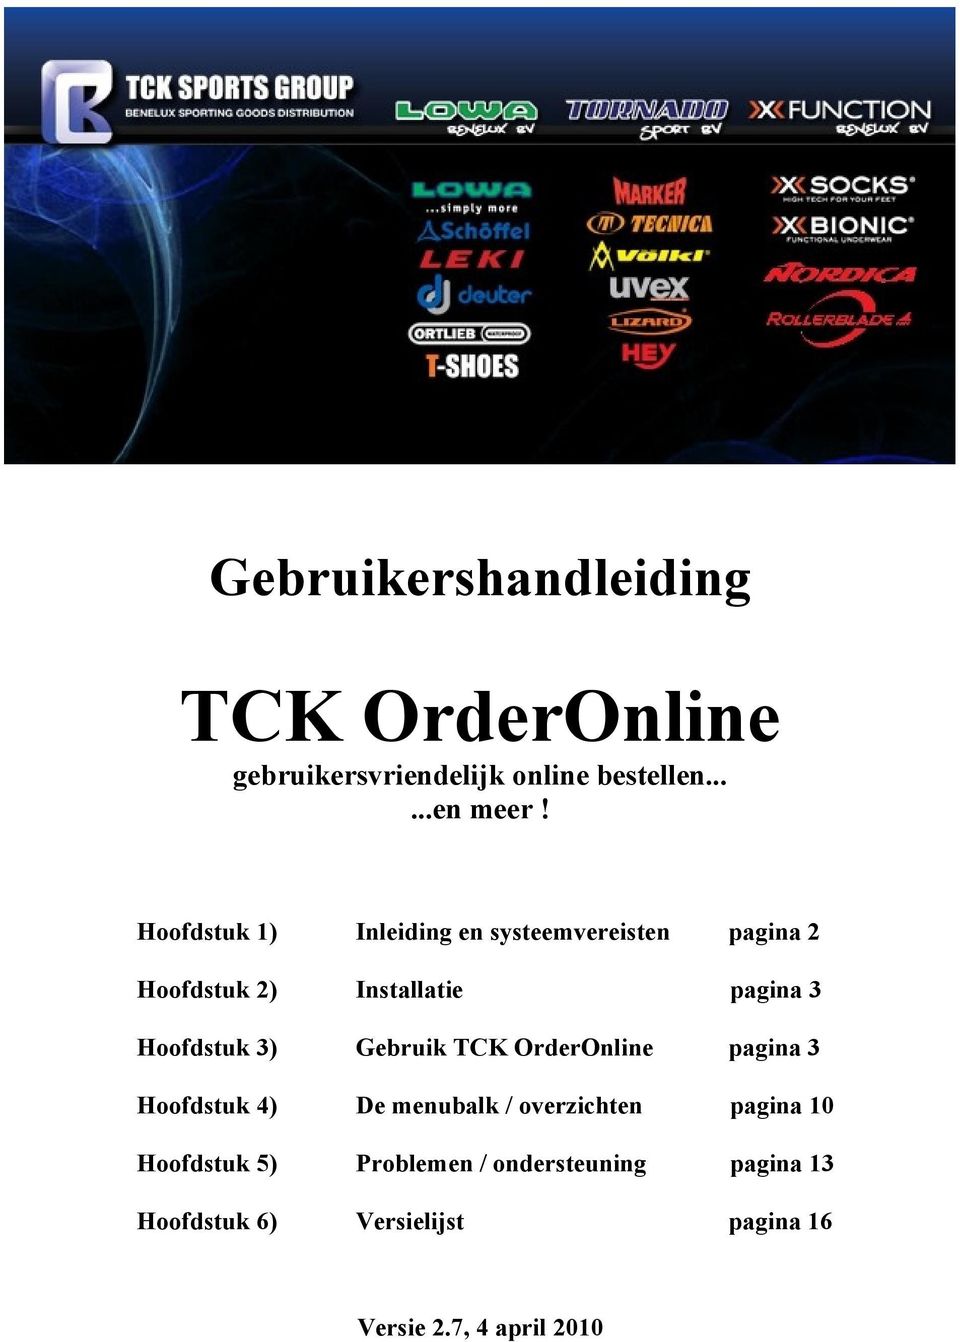 Hoofdstuk 3) Gebruik TCK OrderOnline pagina 3 Hoofdstuk 4) De menubalk / overzichten pagina 10